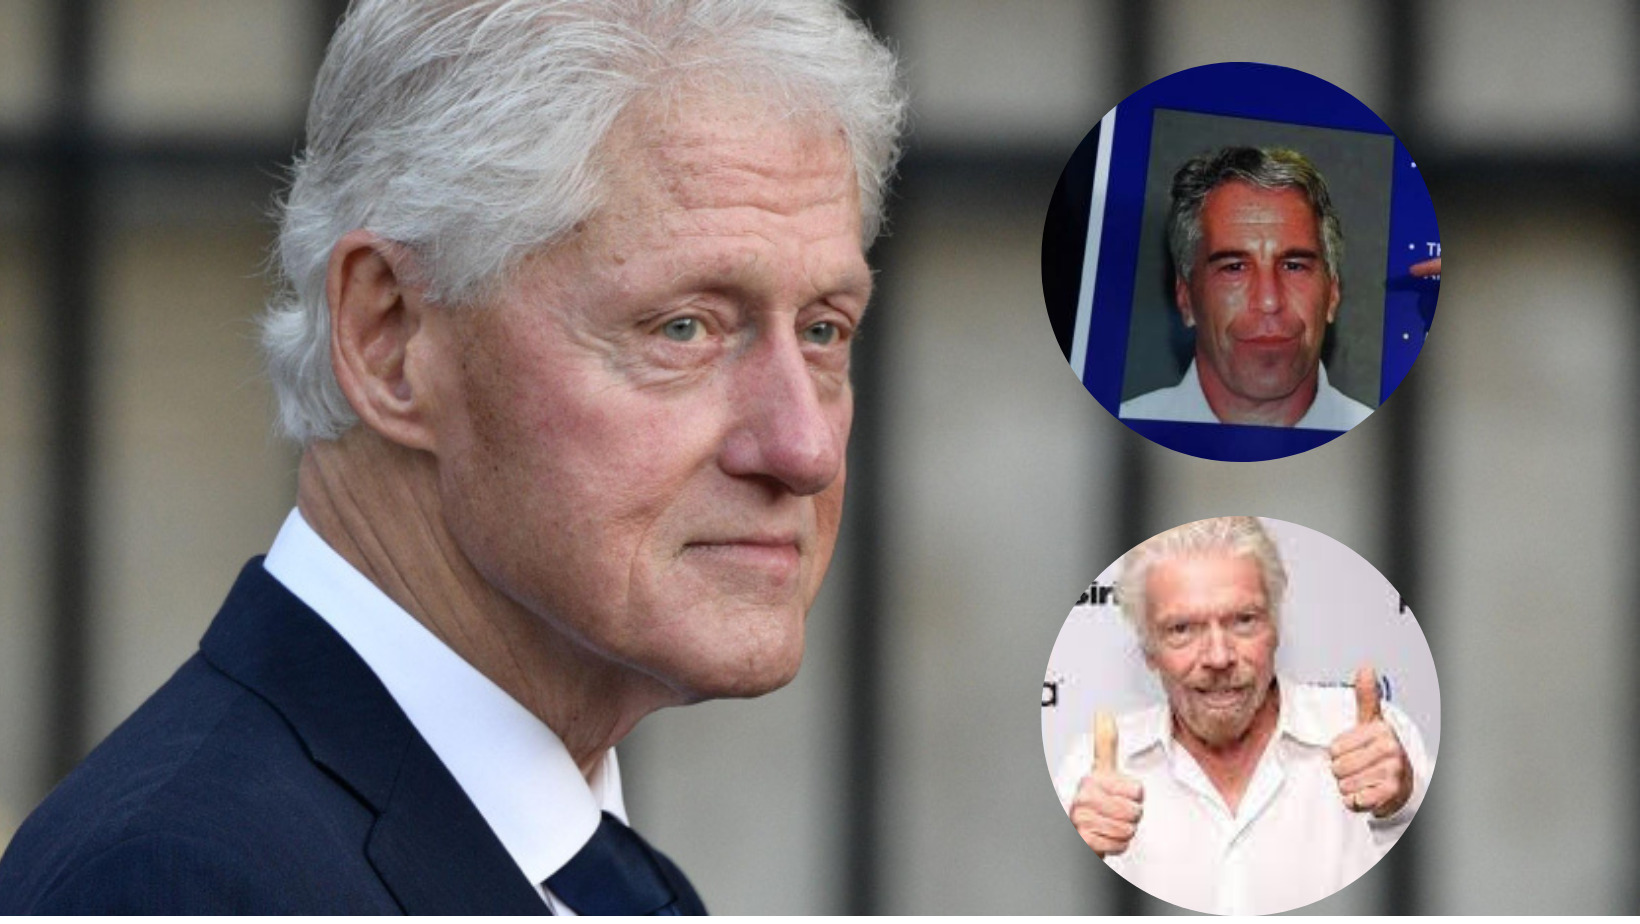 Jeffrey Epstein habría grabado en secreto a Bill Clinton